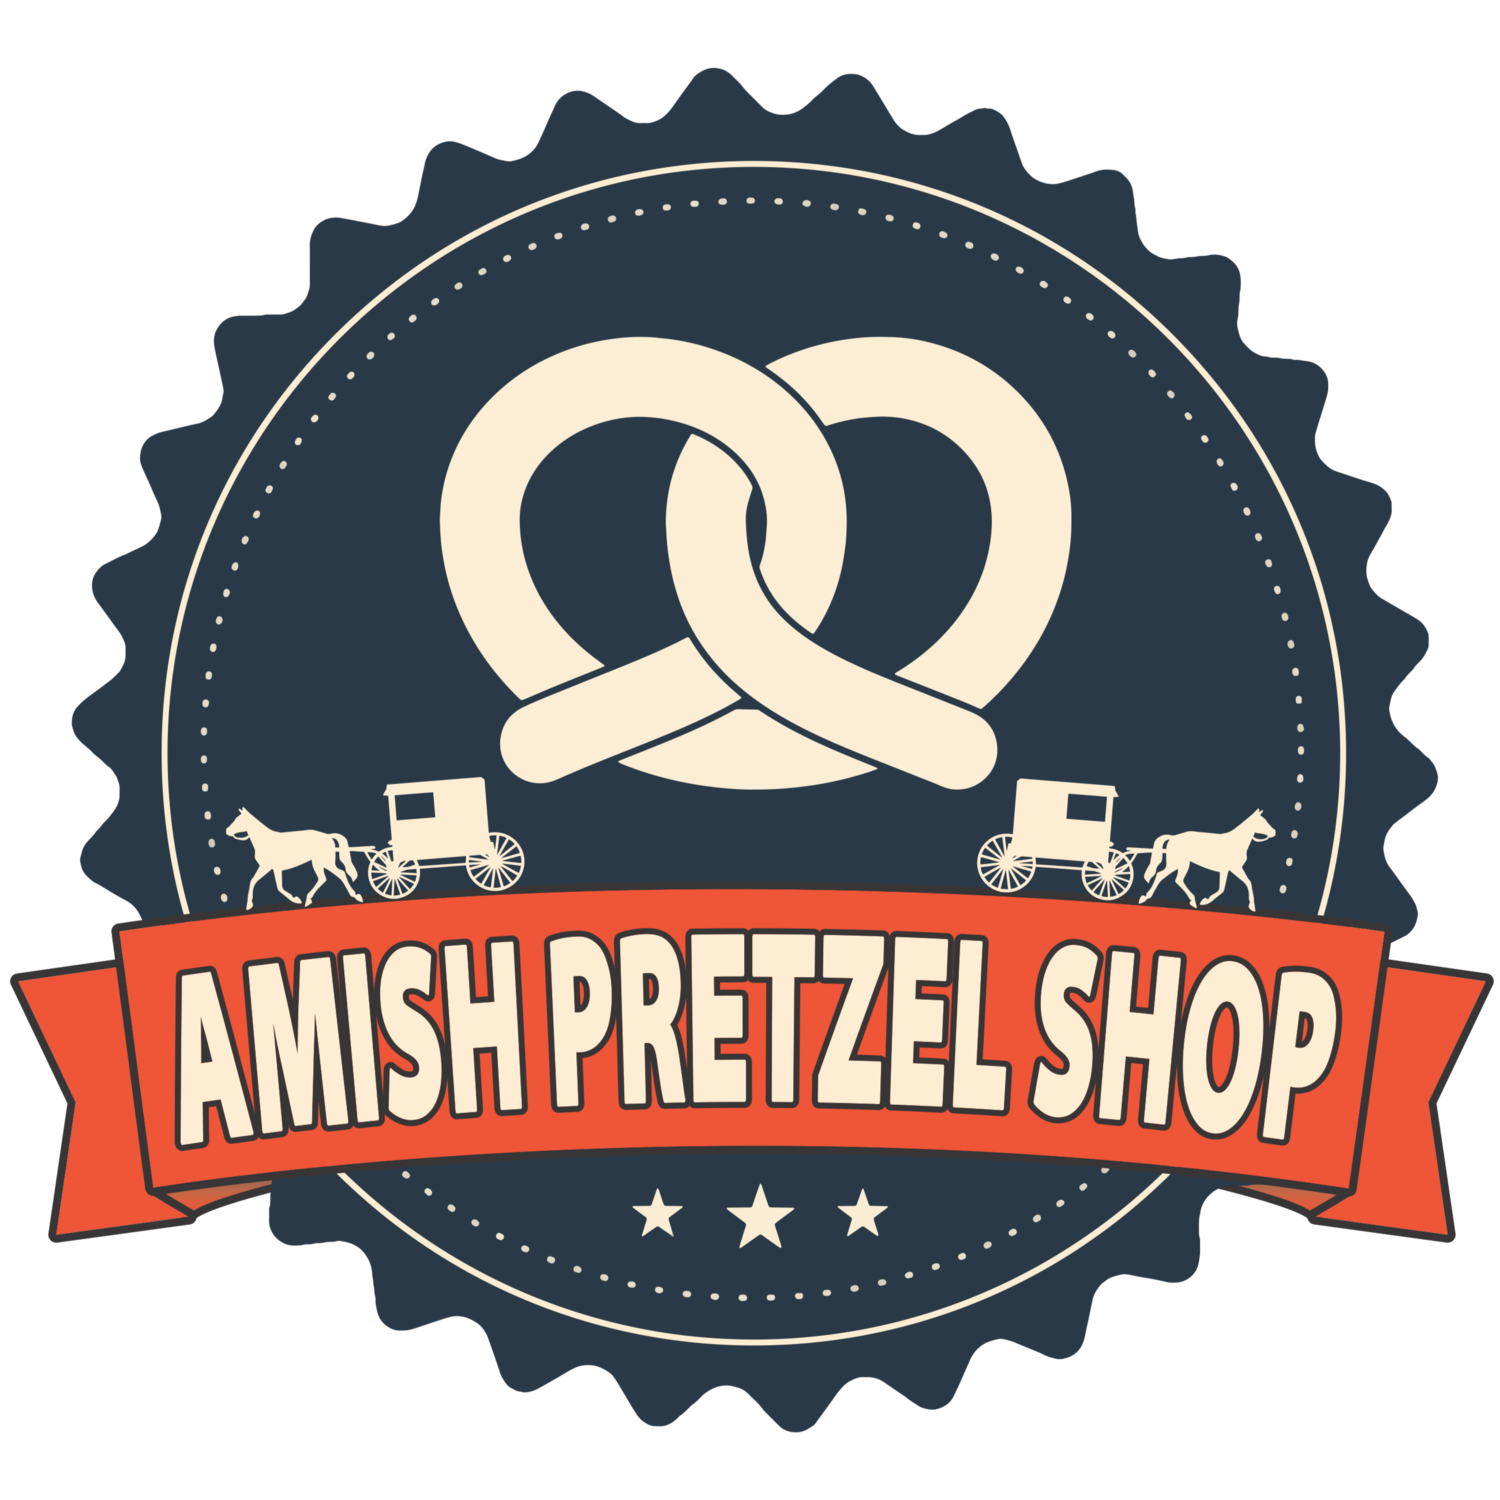 AMISH PRETZEL SHOP